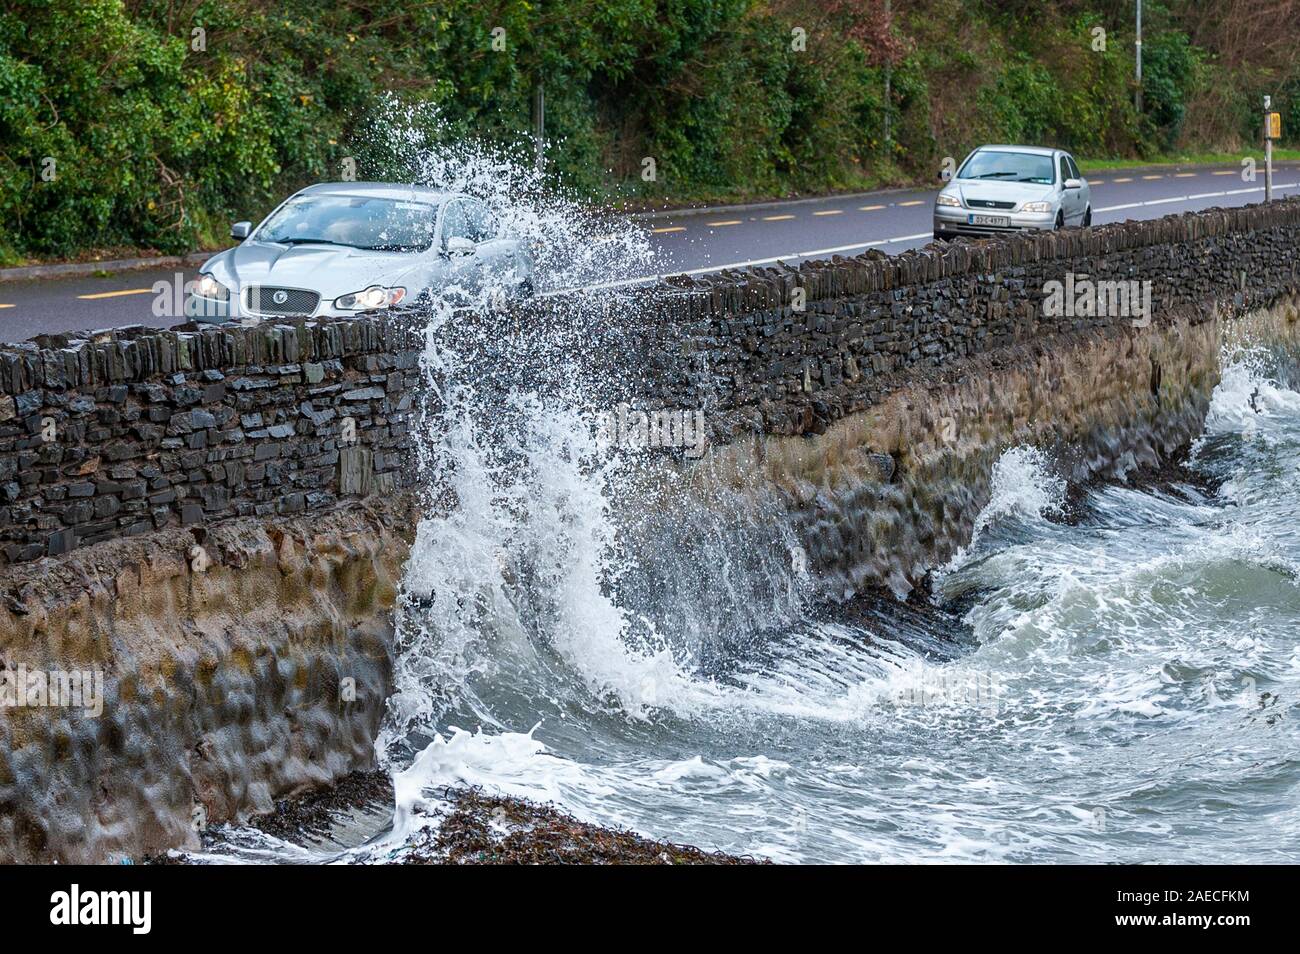 Bantry, West Cork, Irland. Dezember 2019. Sturm Atiyah traf West Cork an diesem Nachmittag mit Winden bis zu 100kmh. Ein Auto fährt entlang der N71 nach Bantry, während große Wellen die Meeresmauer durchbrechen. Quelle: AG News/Alamy Live News Stockfoto